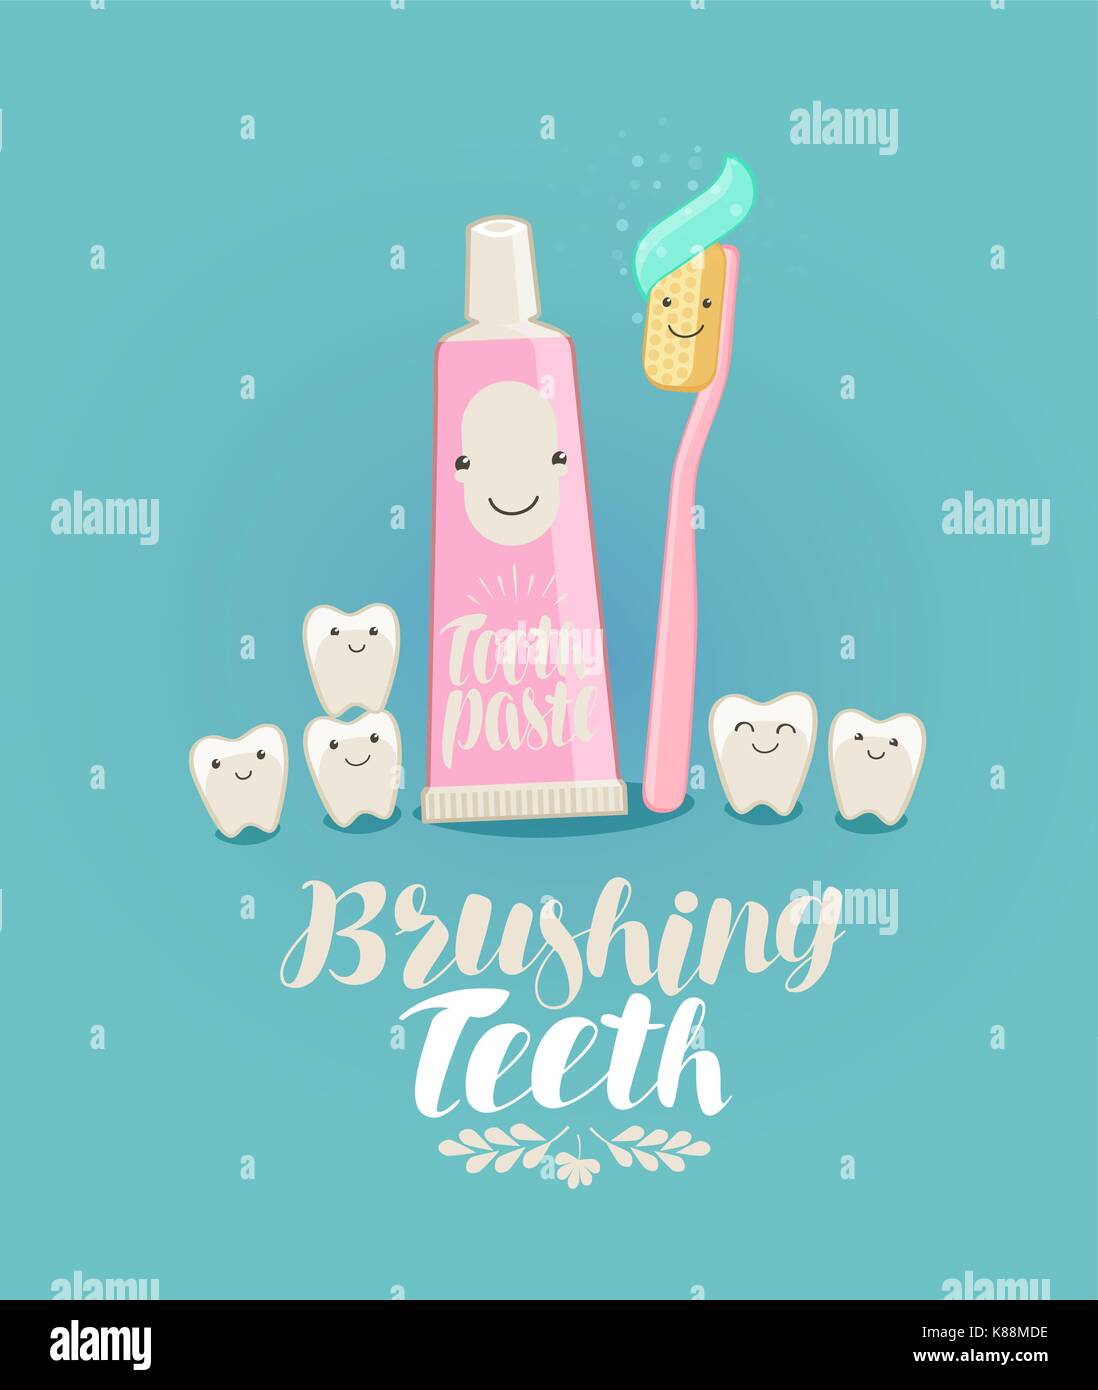 Zähneputzen, Banner. Zahn, Zahnpasta, Zahnbürste, Zahnheilkunde, Zahnarztpraxis Konzept. Cartoon Vector Illustration Stock Vektor